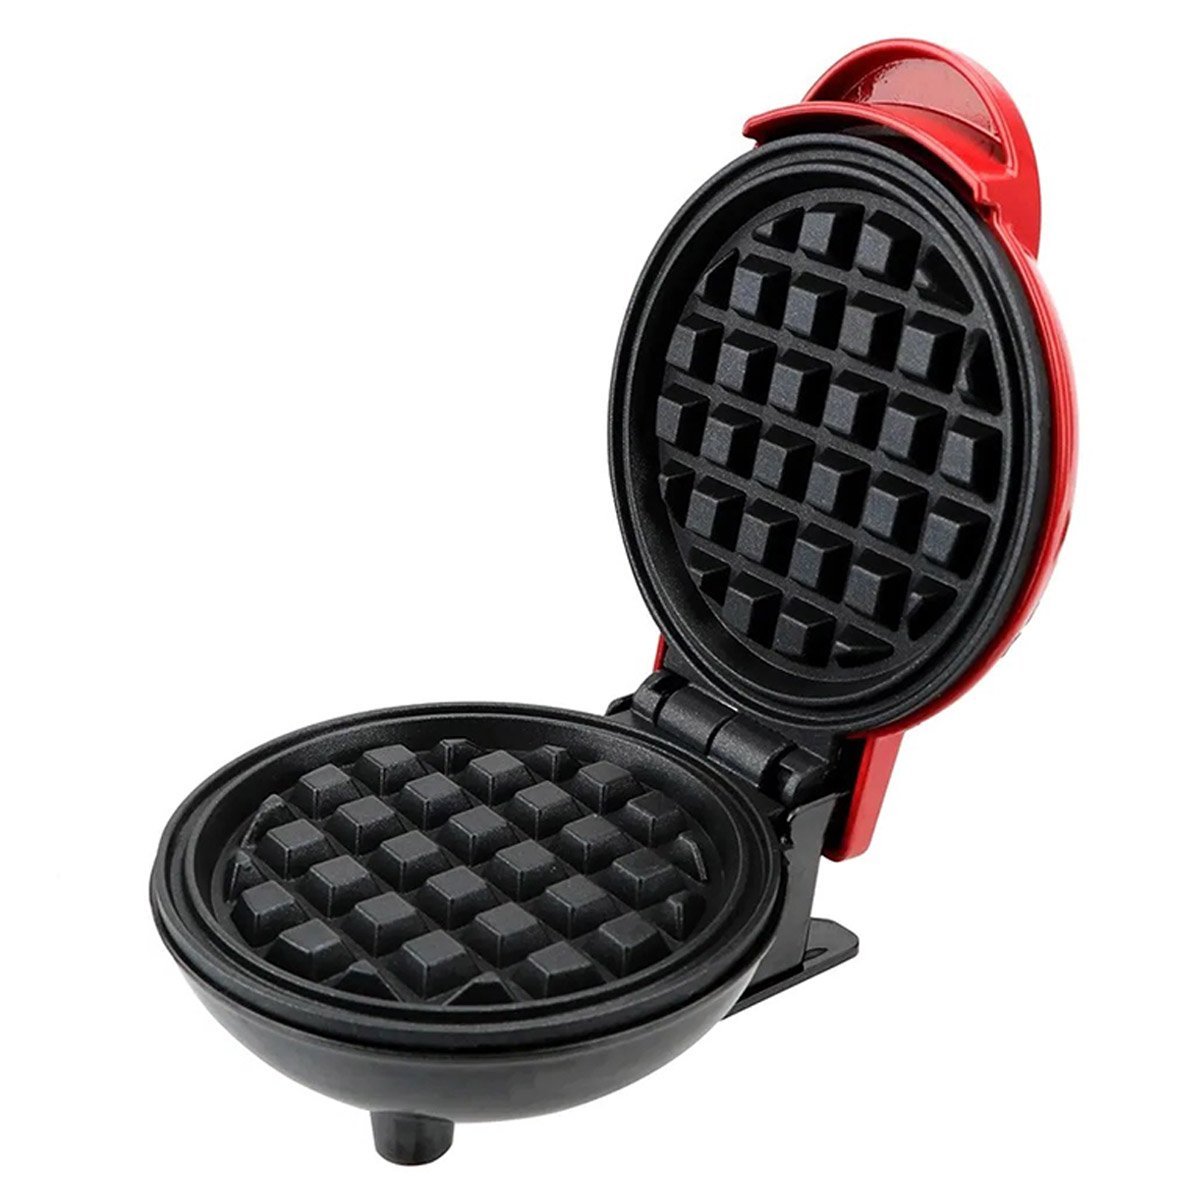 Mini Maquina de Waffles Panqueca Refeiçao Lanche Cozinha Cafe da Manha Placa Antiaderente Resistente - 4